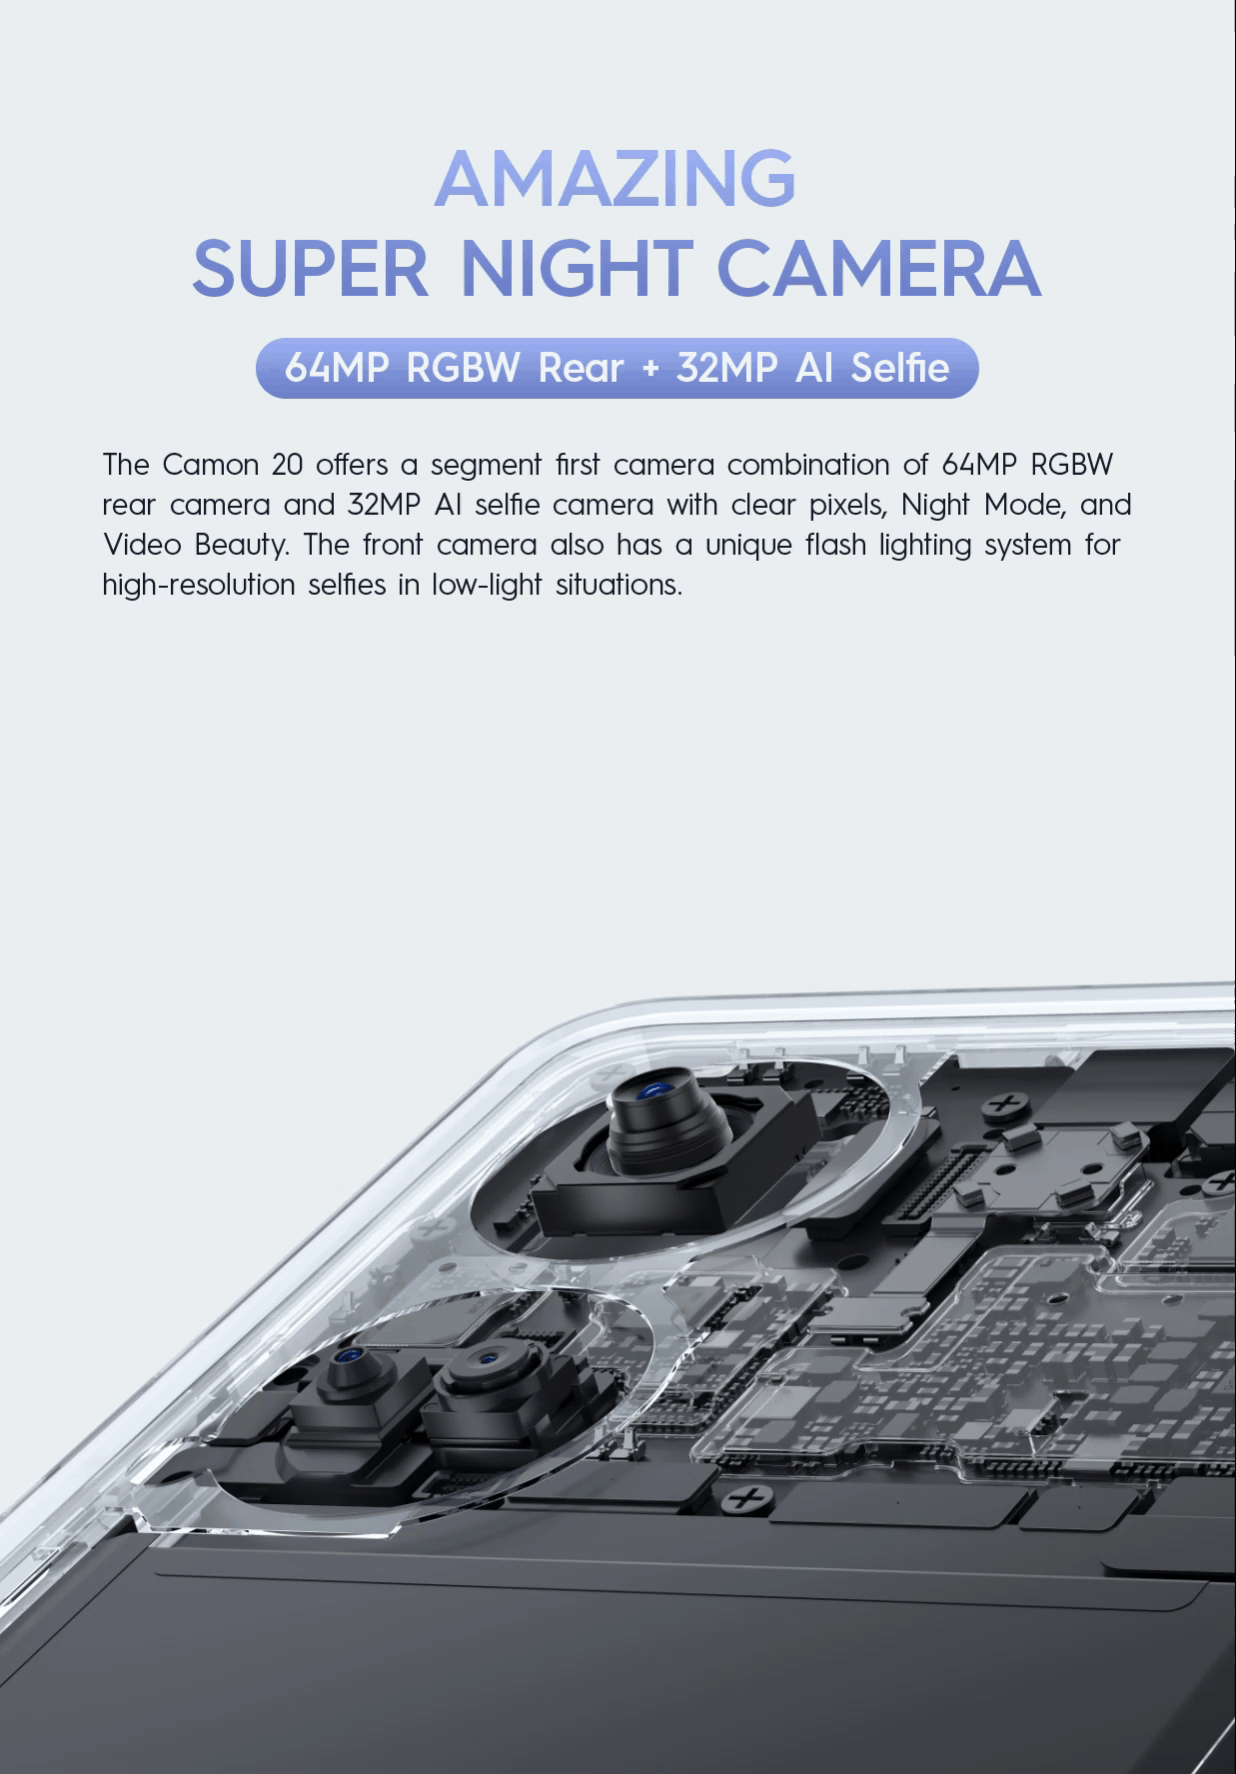 TECNO CAMON 20 Mobile - Amazing Super Night Camera